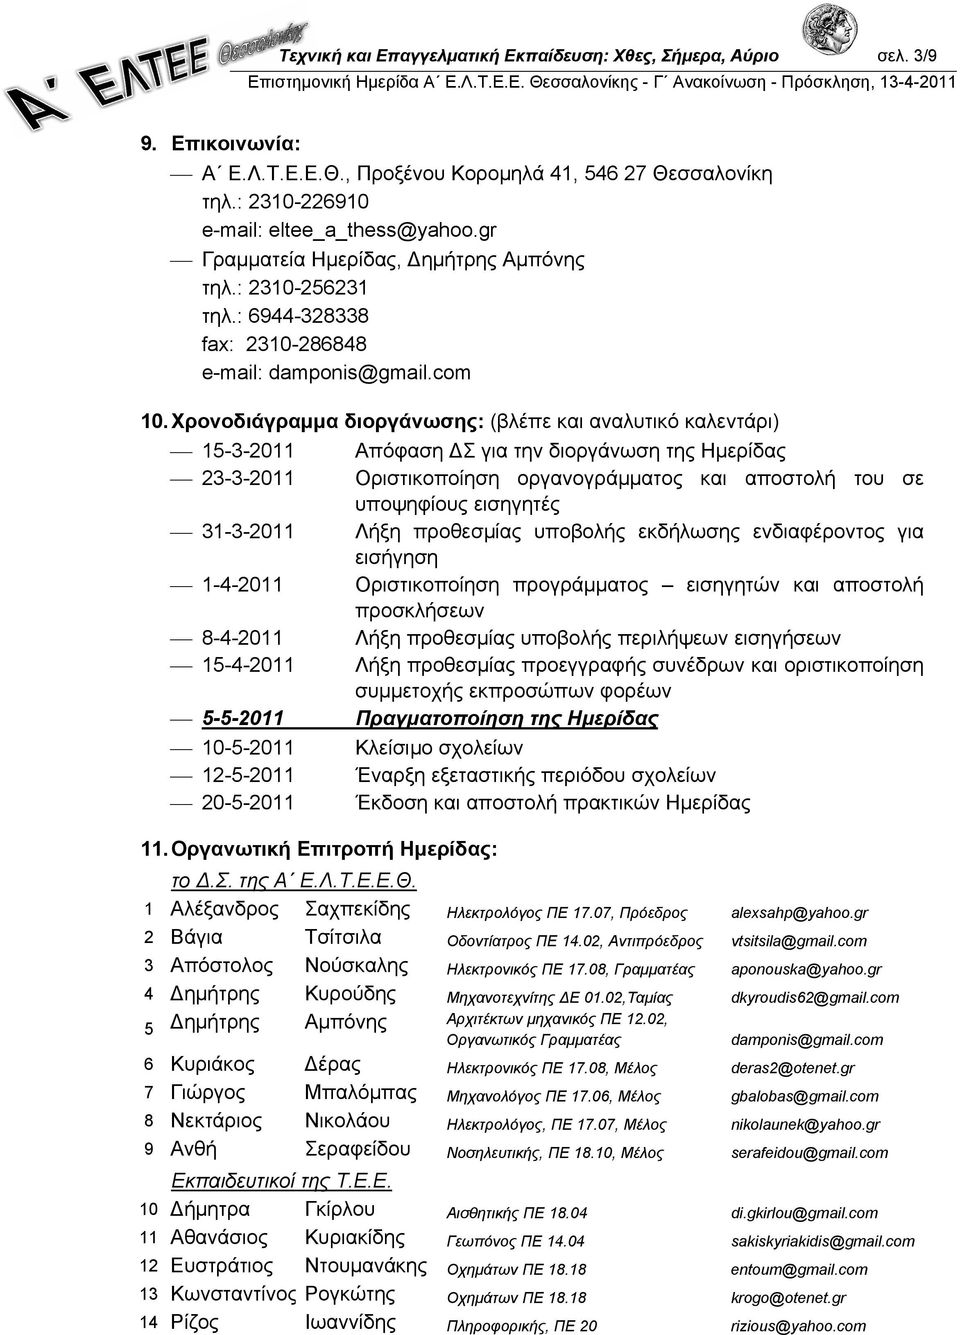 Χρονοδιάγραμμα διοργάνωσης: (βλέπε και αναλυτικό καλεντάρι) 15-3-2011 Απόφαση ΔΣ για την διοργάνωση της Ημερίδας 23-3-2011 Οριστικοποίηση οργανογράμματος και αποστολή του σε υποψηφίους εισηγητές